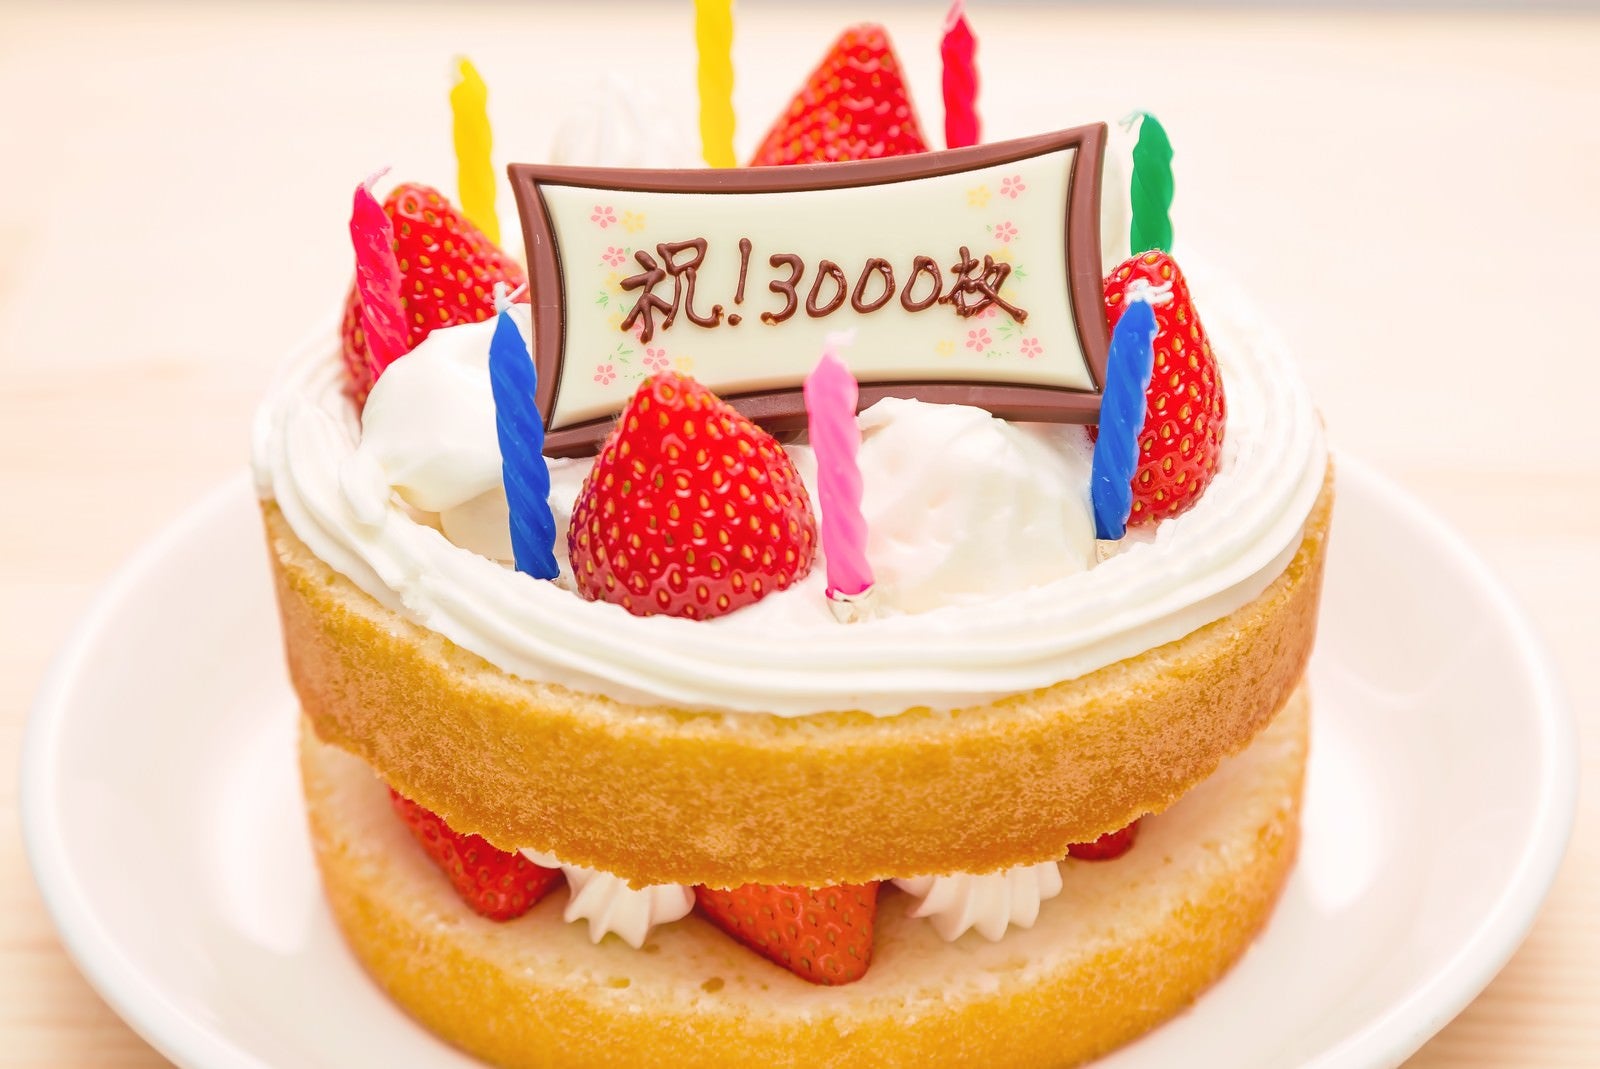 「祝・3000枚のケーキ」の写真